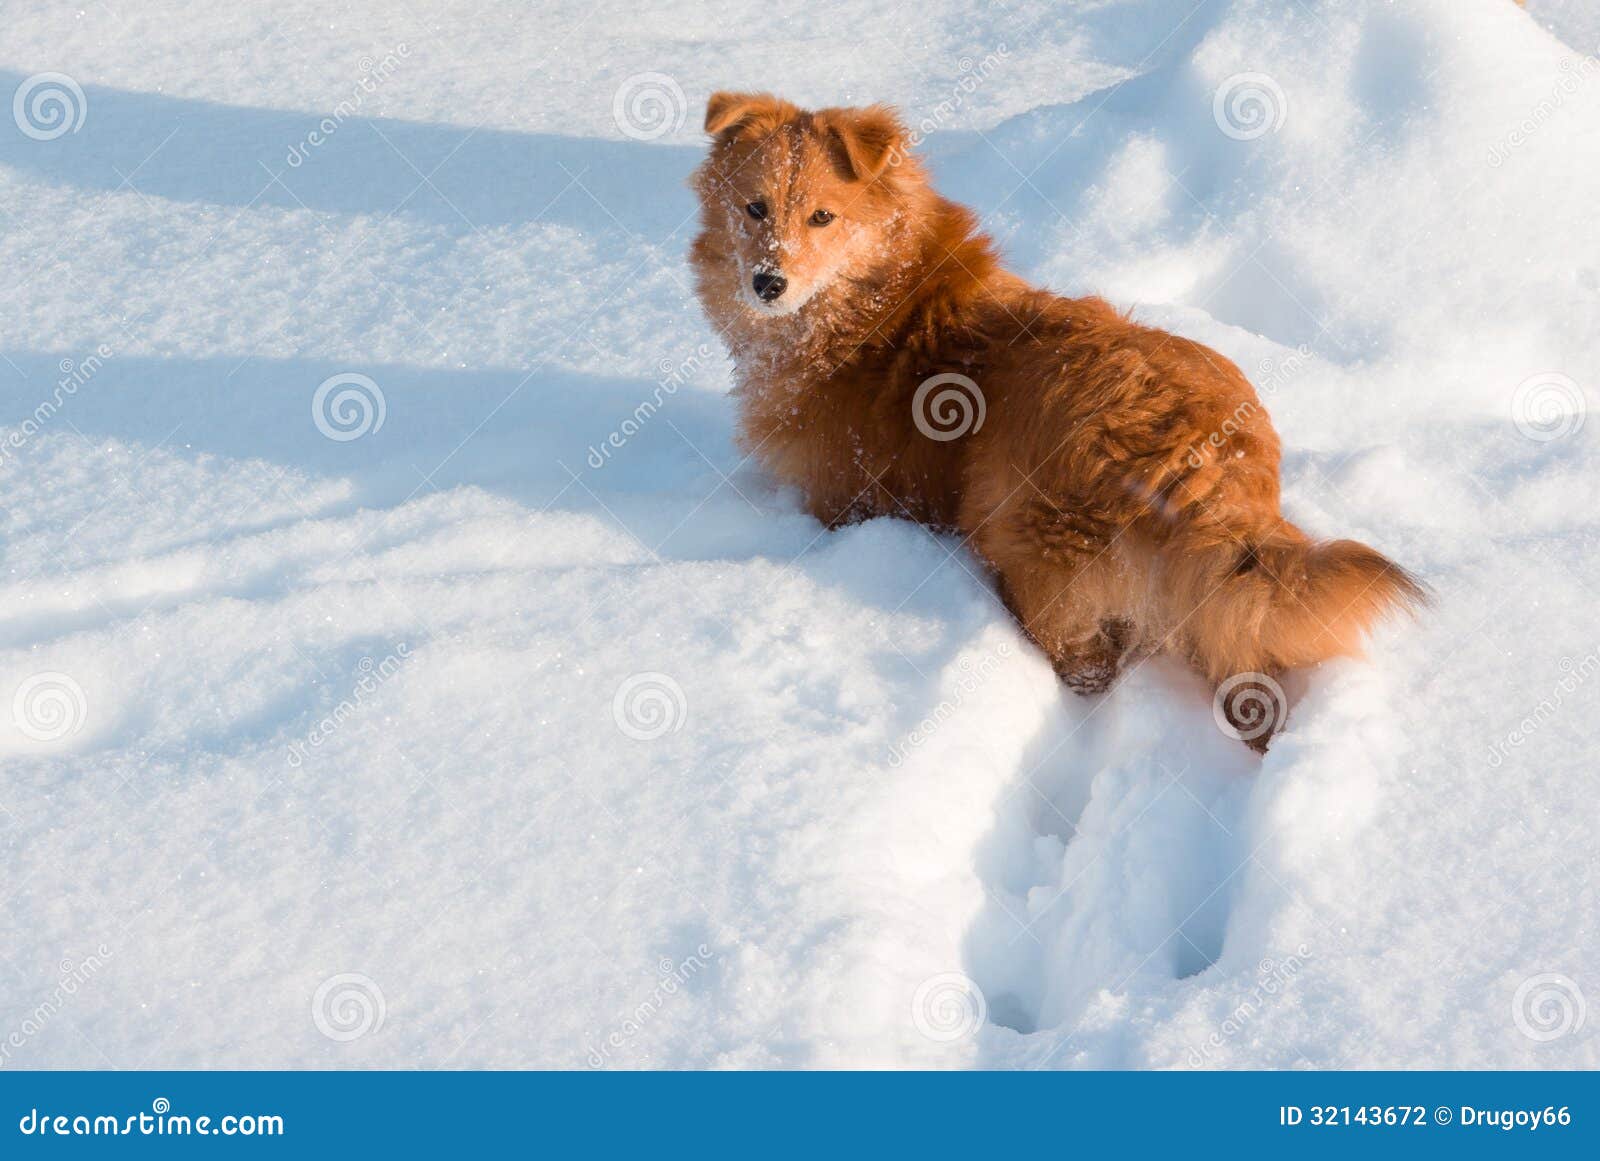 orange-dog-not-purebred-ed-white-fluffy-